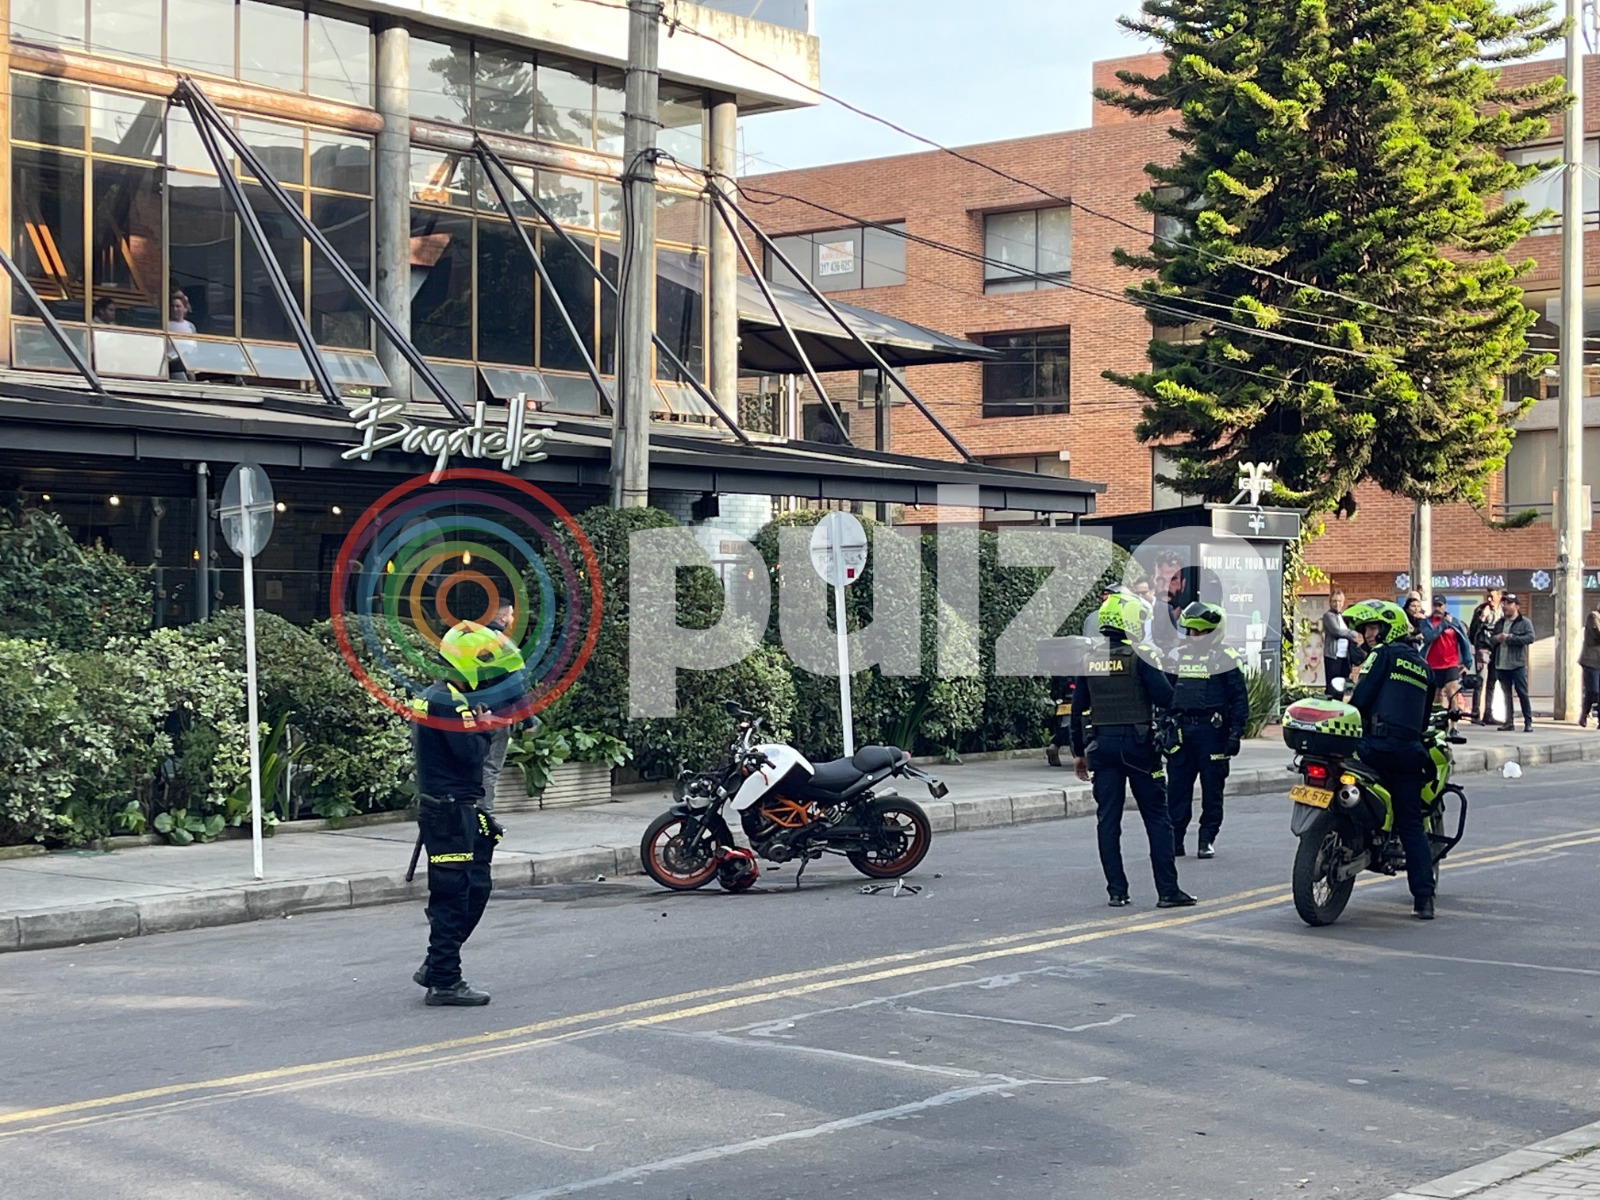 Balacera en Parque de la 93, en el norte de Bogotá: revelan video de tiroteo frente a restaurante Bagatelle este 21 de febrero.